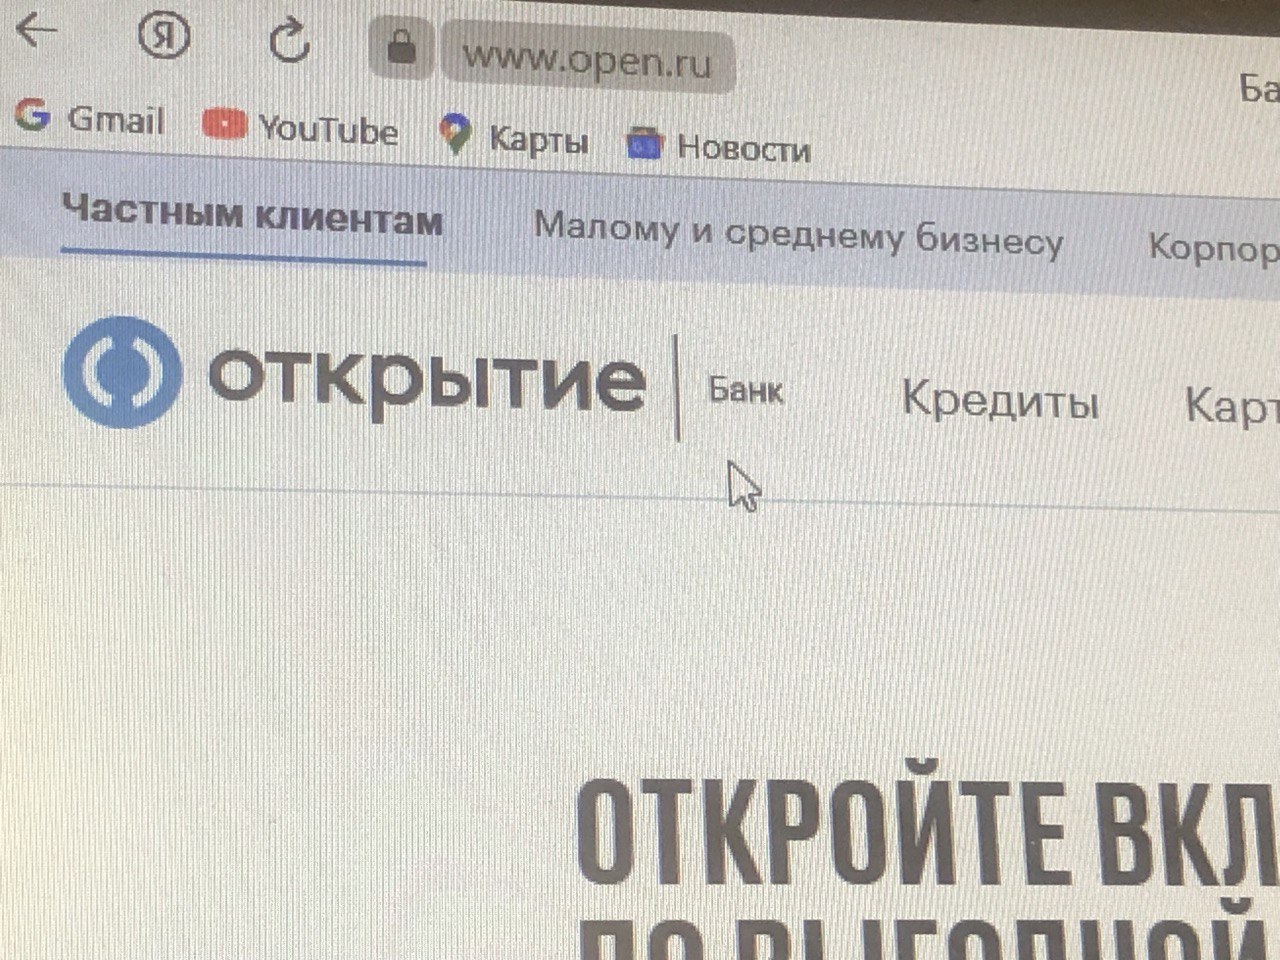 В Пермском крае закроют все отделения банка «Открытие» 